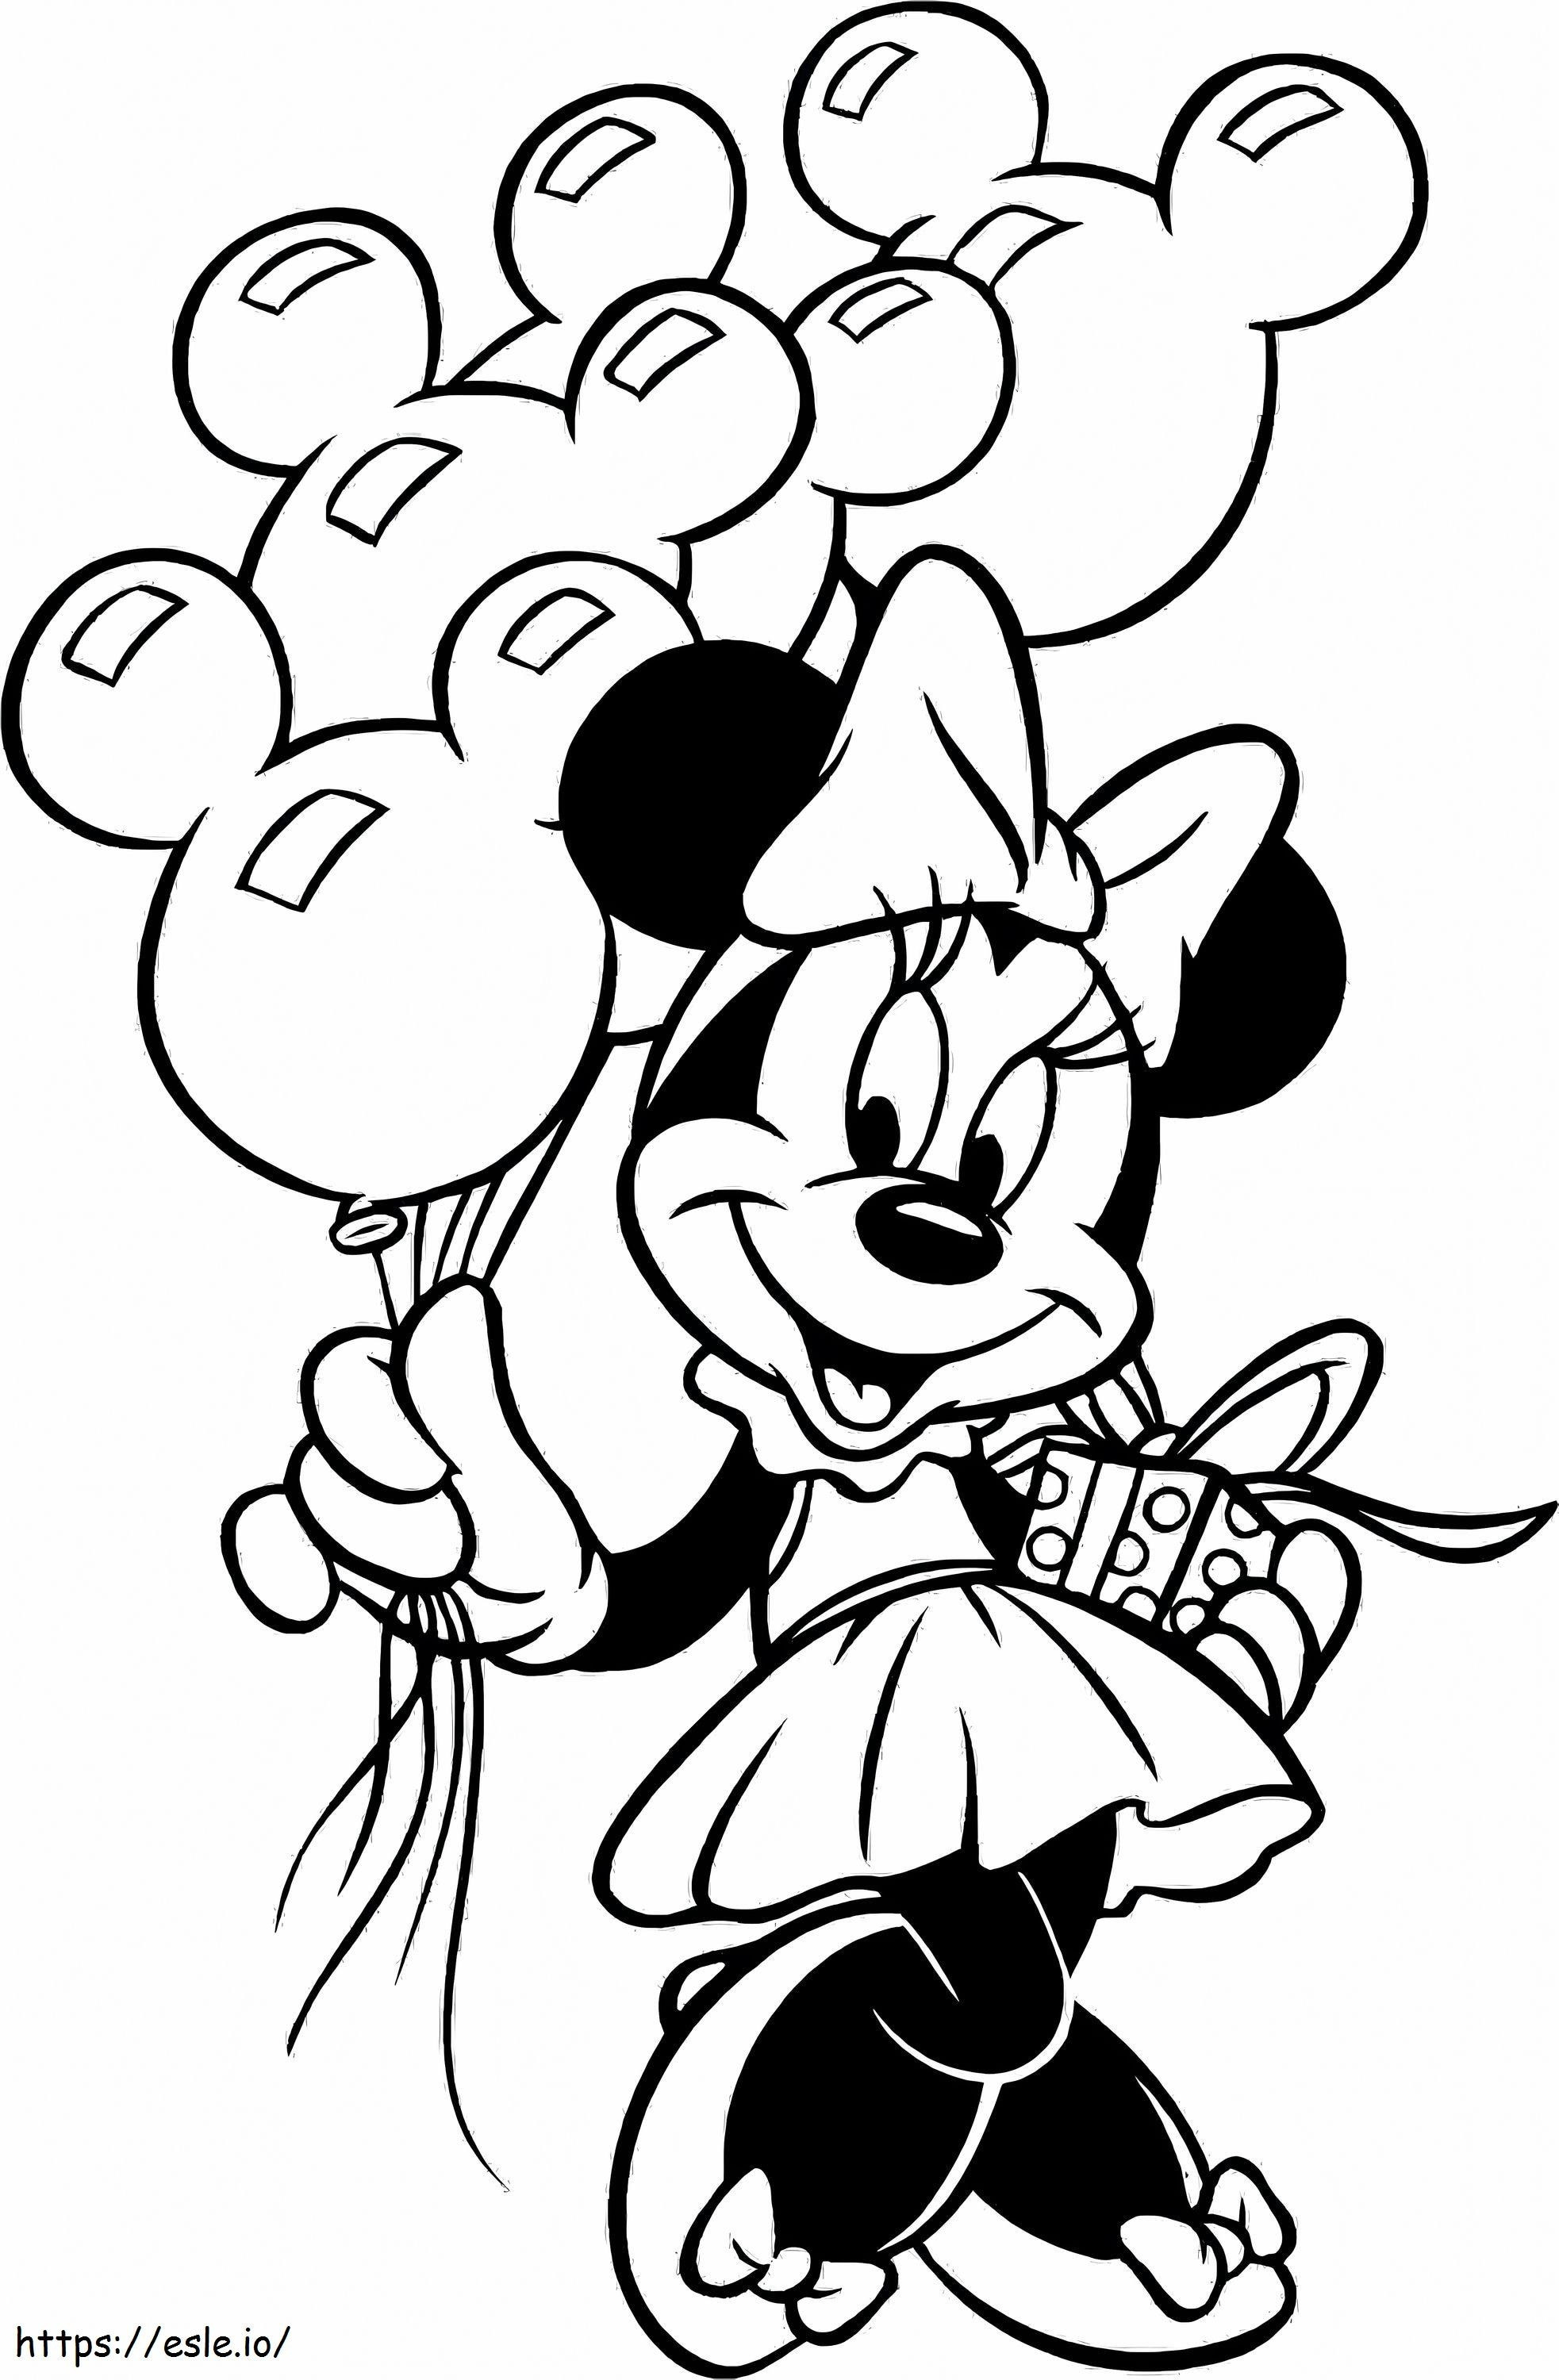 Minnie Mouse segurando um balão para colorir